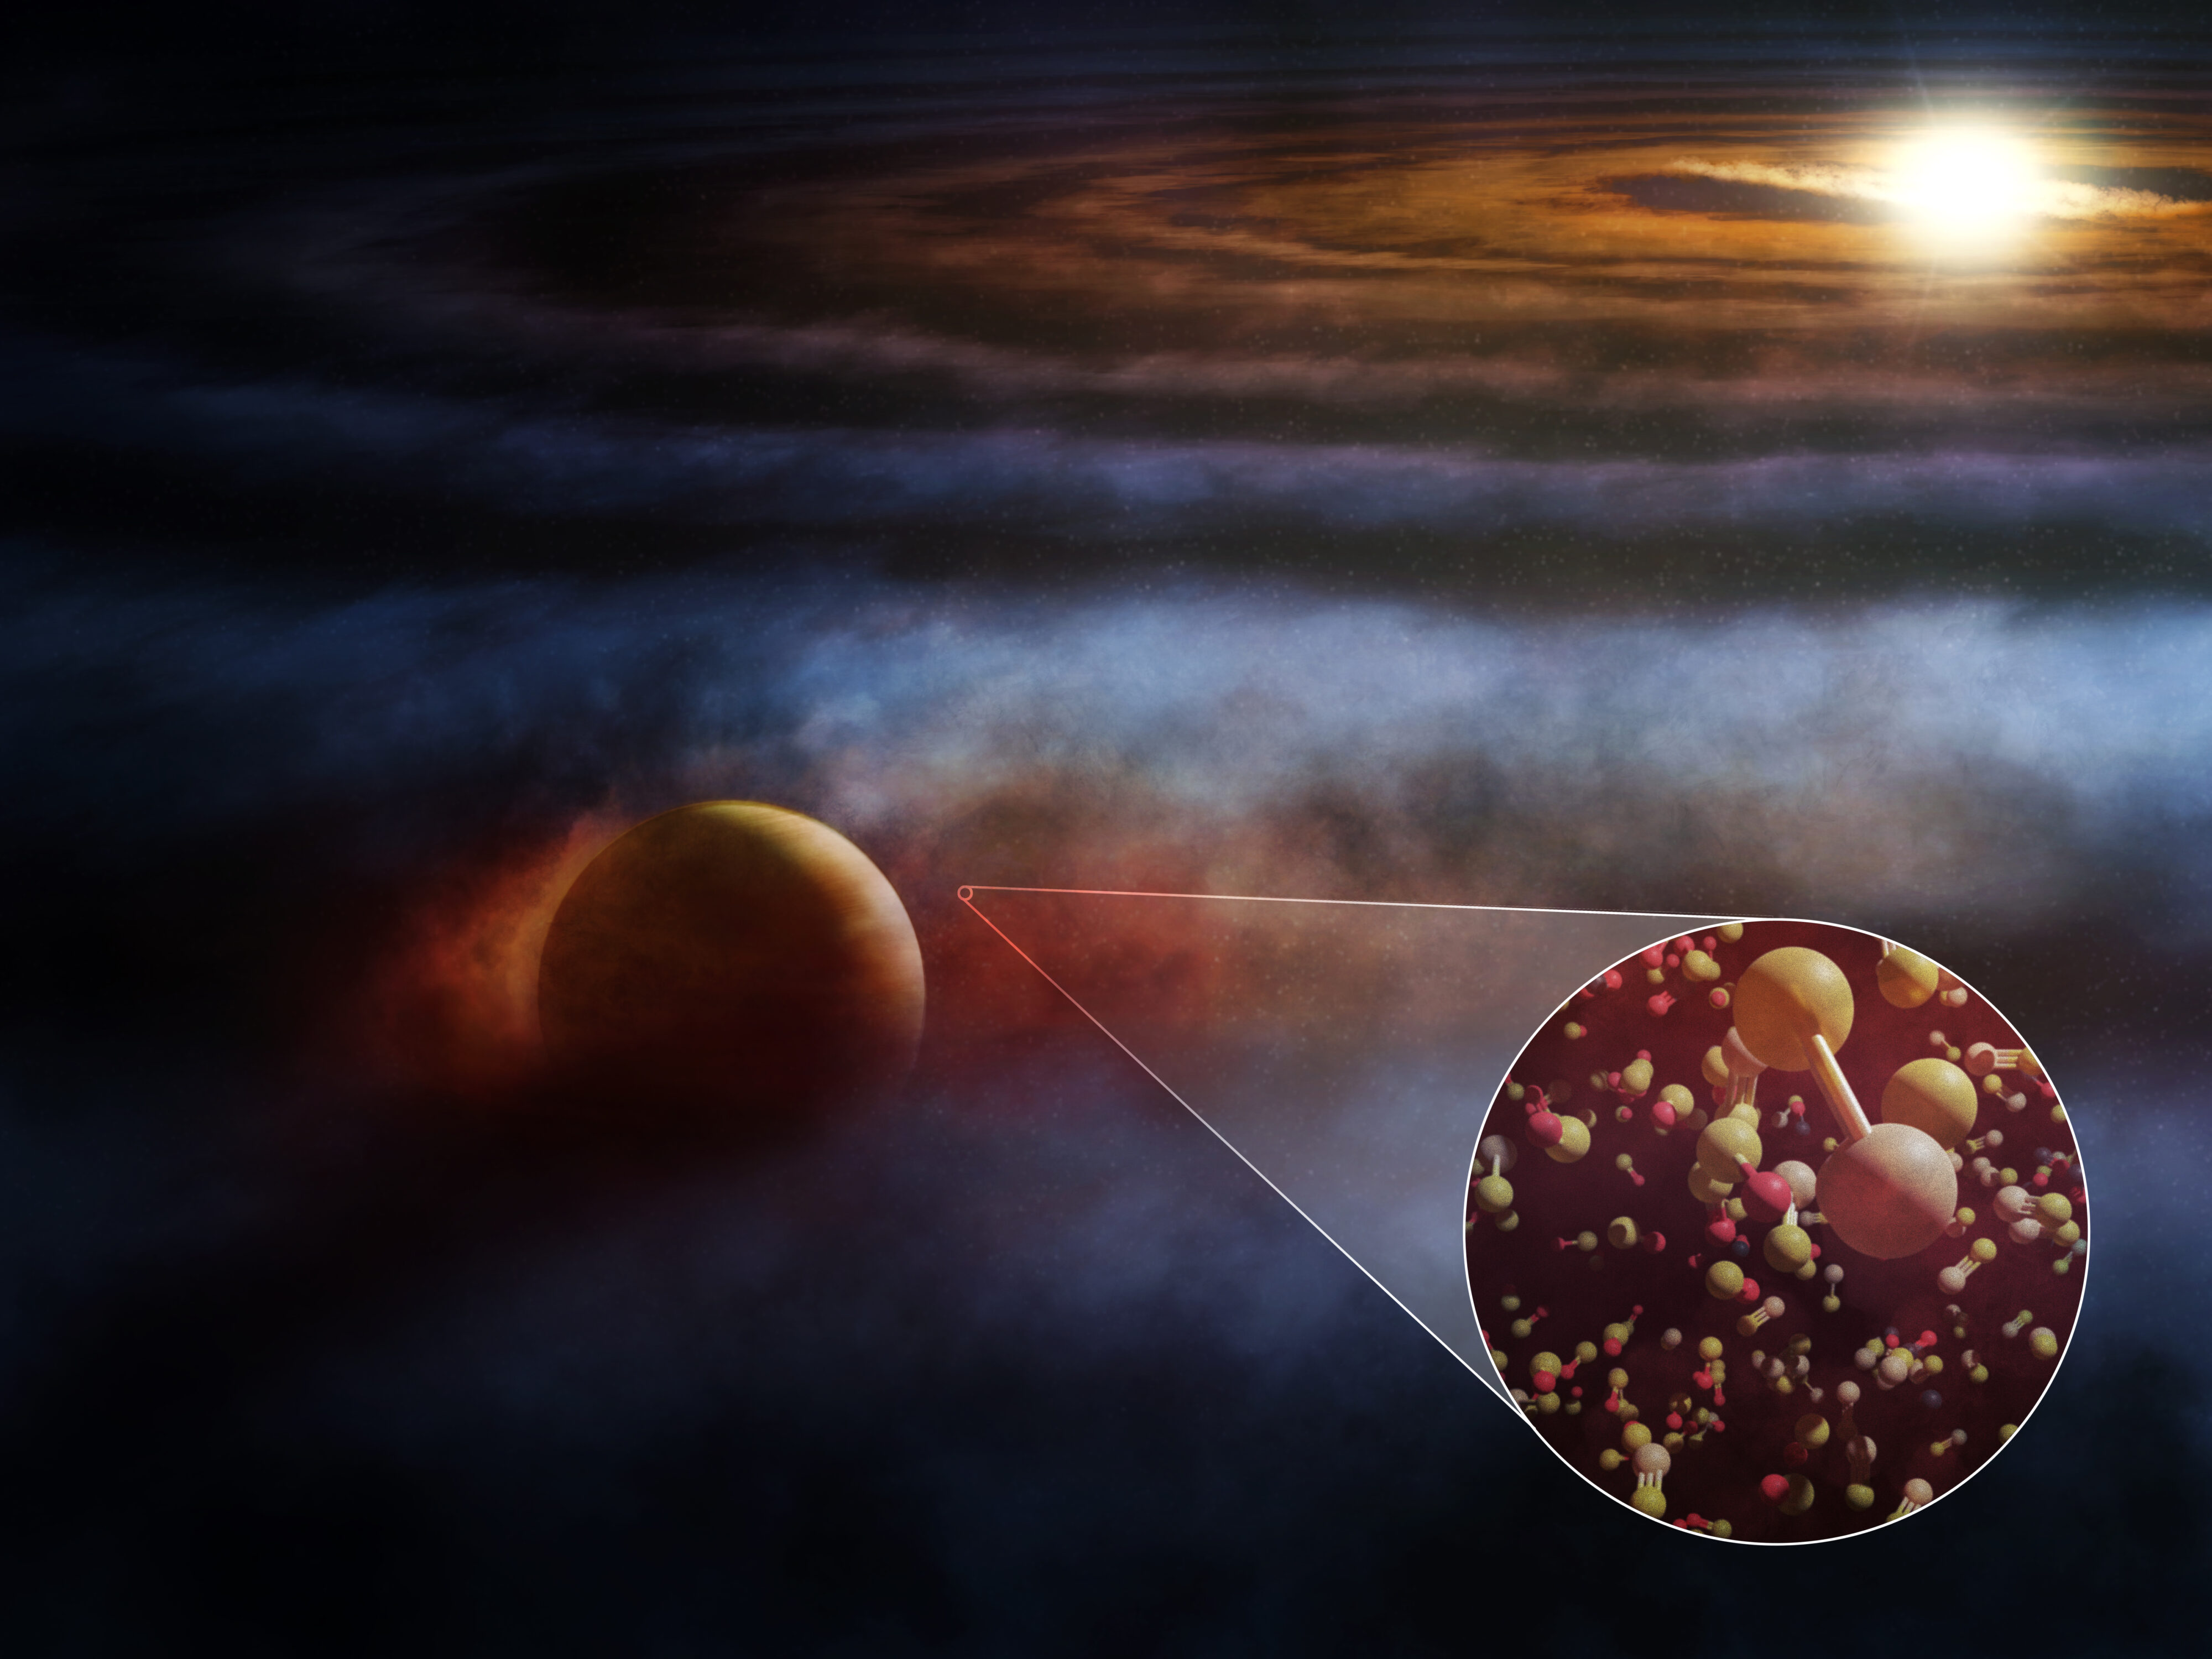 Ubicada en la constelación de Sagitario, la joven estrella HD 169142 alberga un protoplaneta gigante incrustado dentro de su polvoriento disco protoplanetario rico en gas. La concepción de este artista muestra al planeta similar a Júpiter interactuando y calentando el gas molecular cercano, impulsando los flujos de salida que se ven en varias líneas de emisión, incluidas las de moléculas de trazado de choque como SO y SiS, y el 12CO y 13CO comúnmente visto. Crédito: ALMA (ESO/NAOJ/NRAO), M. Weiss (NRAO/AUI/NSF)